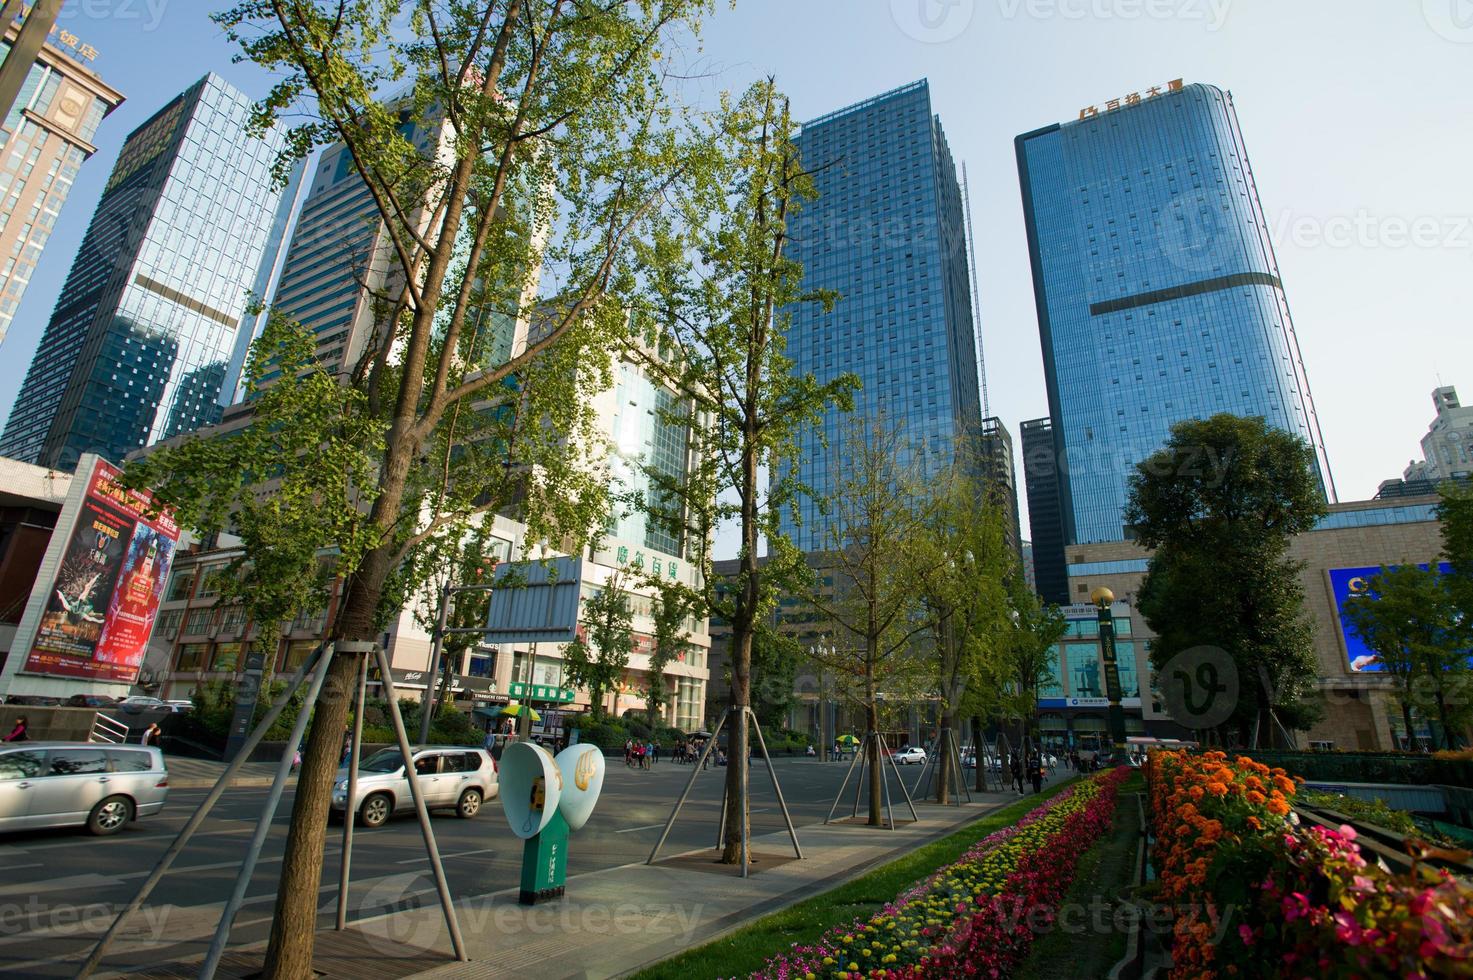 Tianfu Square, Business Center in Chengdu, China. foto